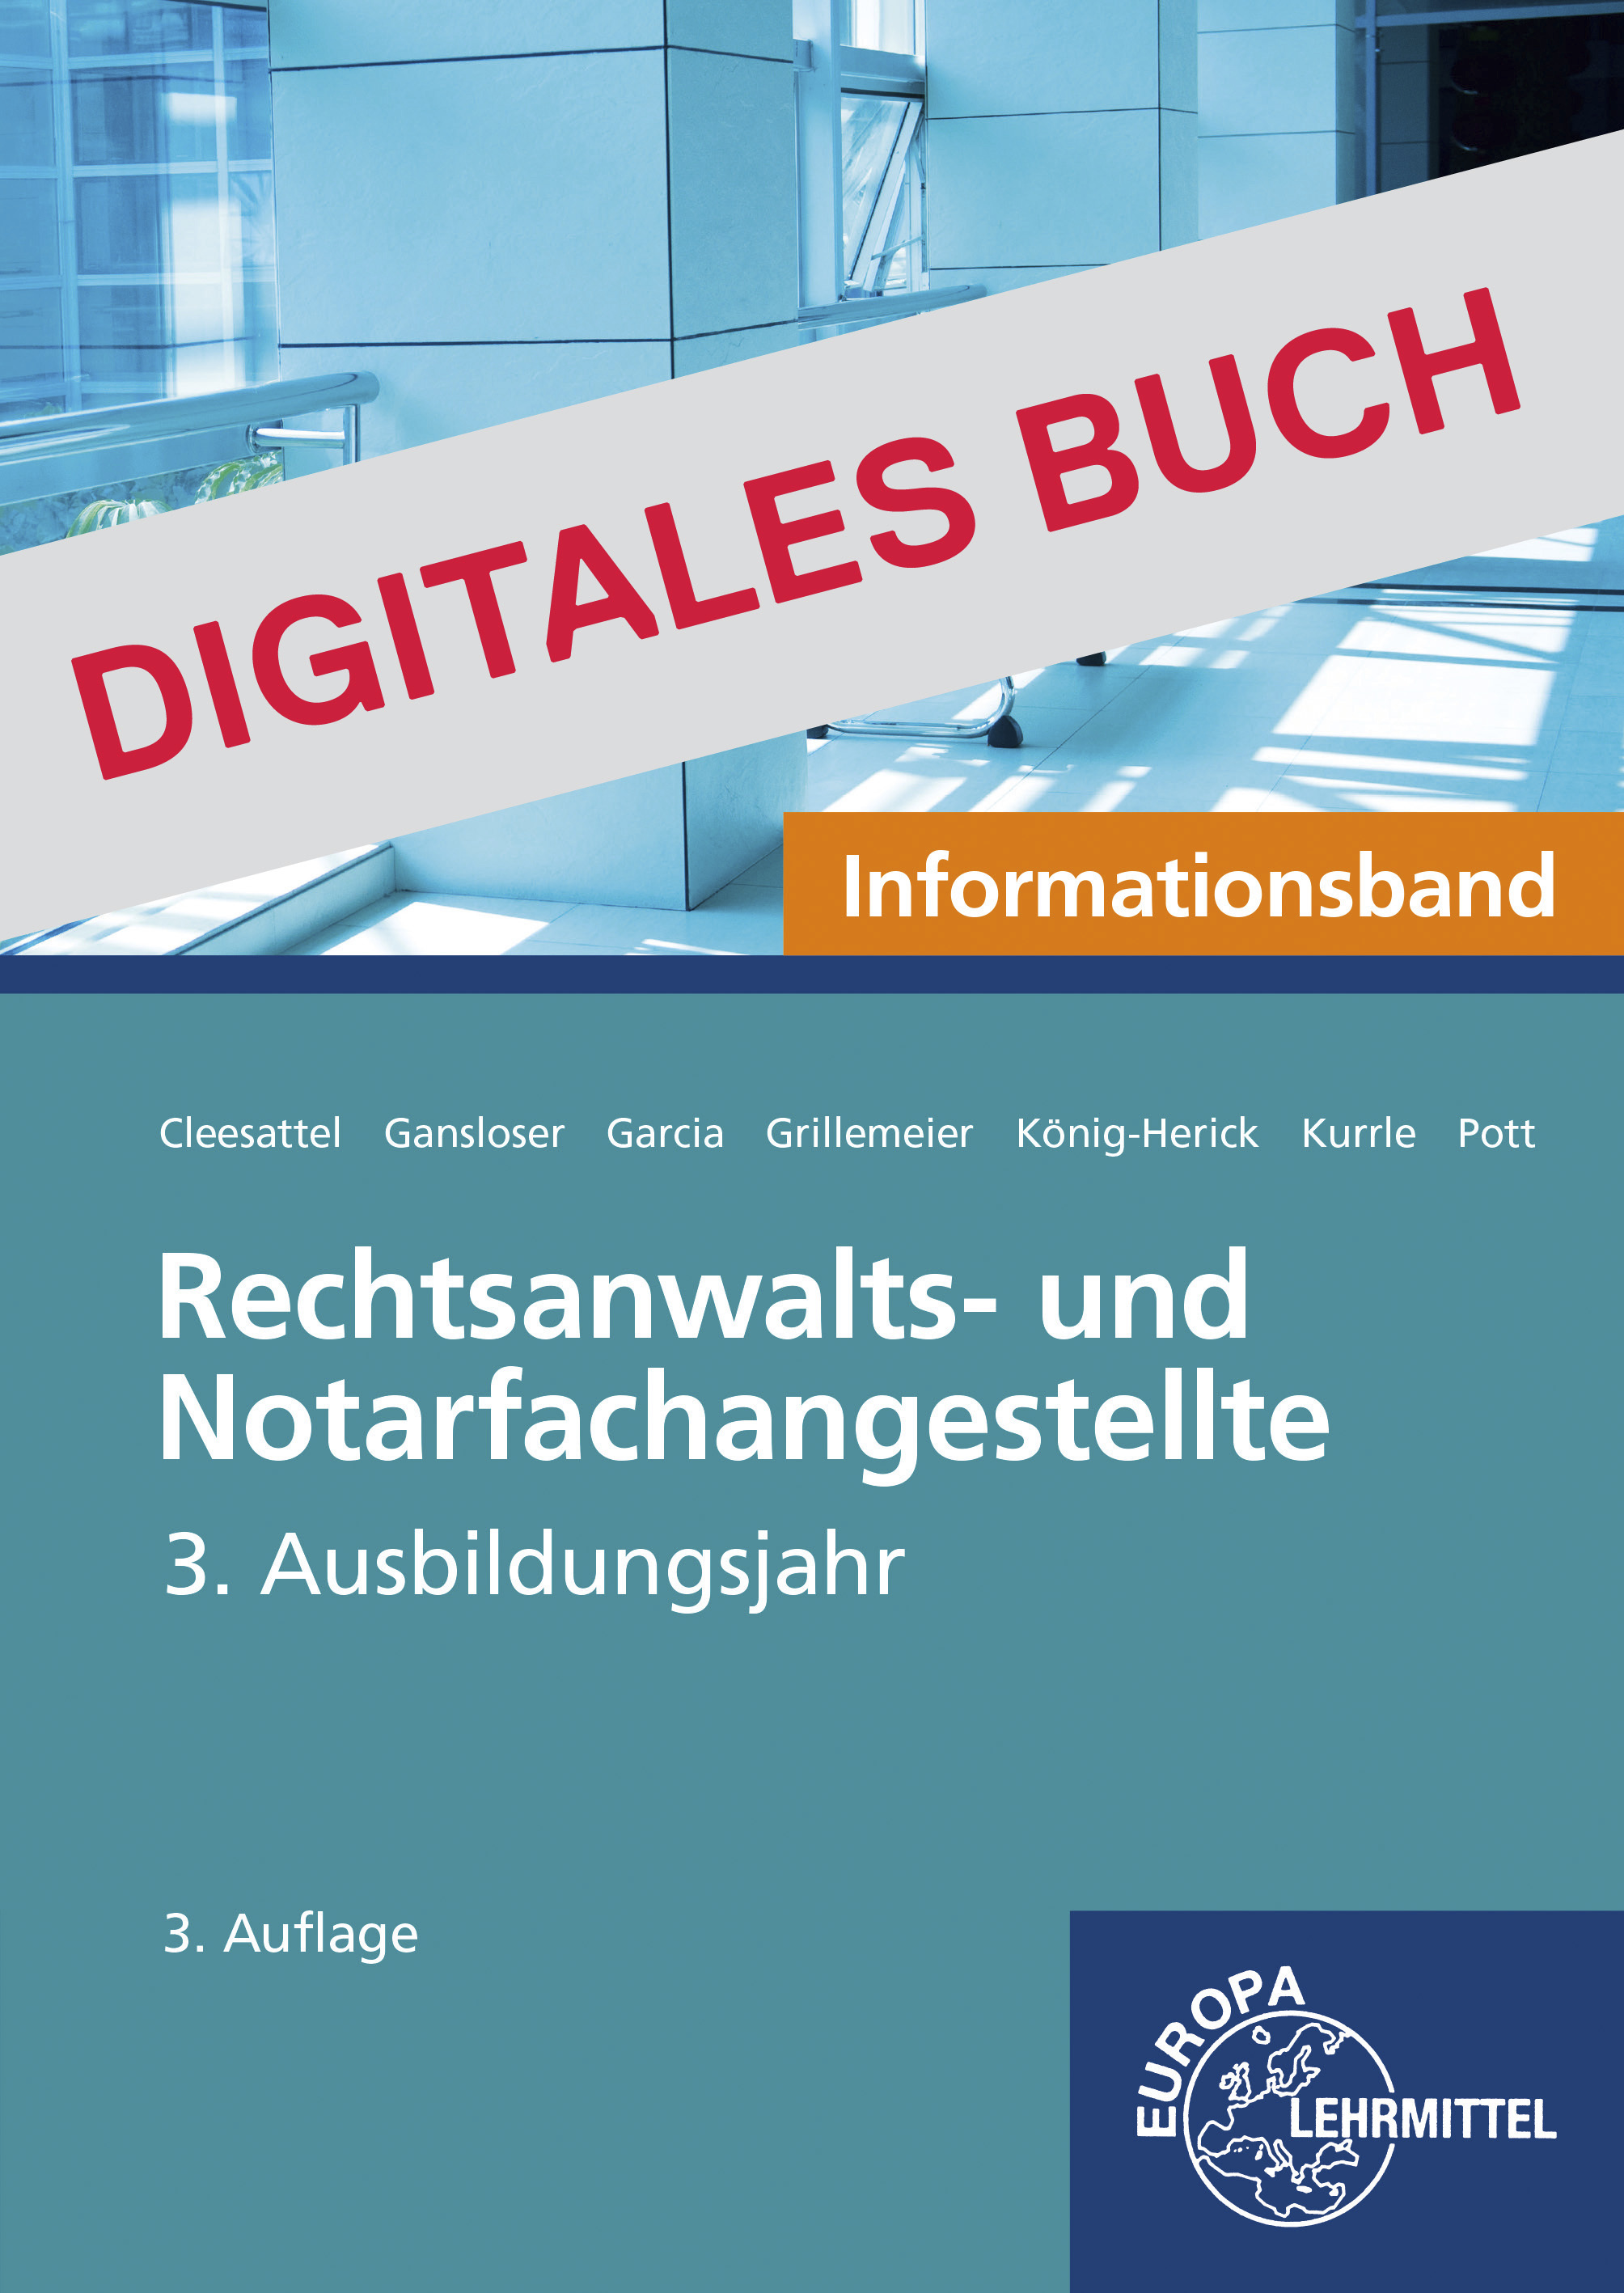 Rechtsanwalts- u. Notarfachangestellte, Informationsband 3. J. - Digitales Buch